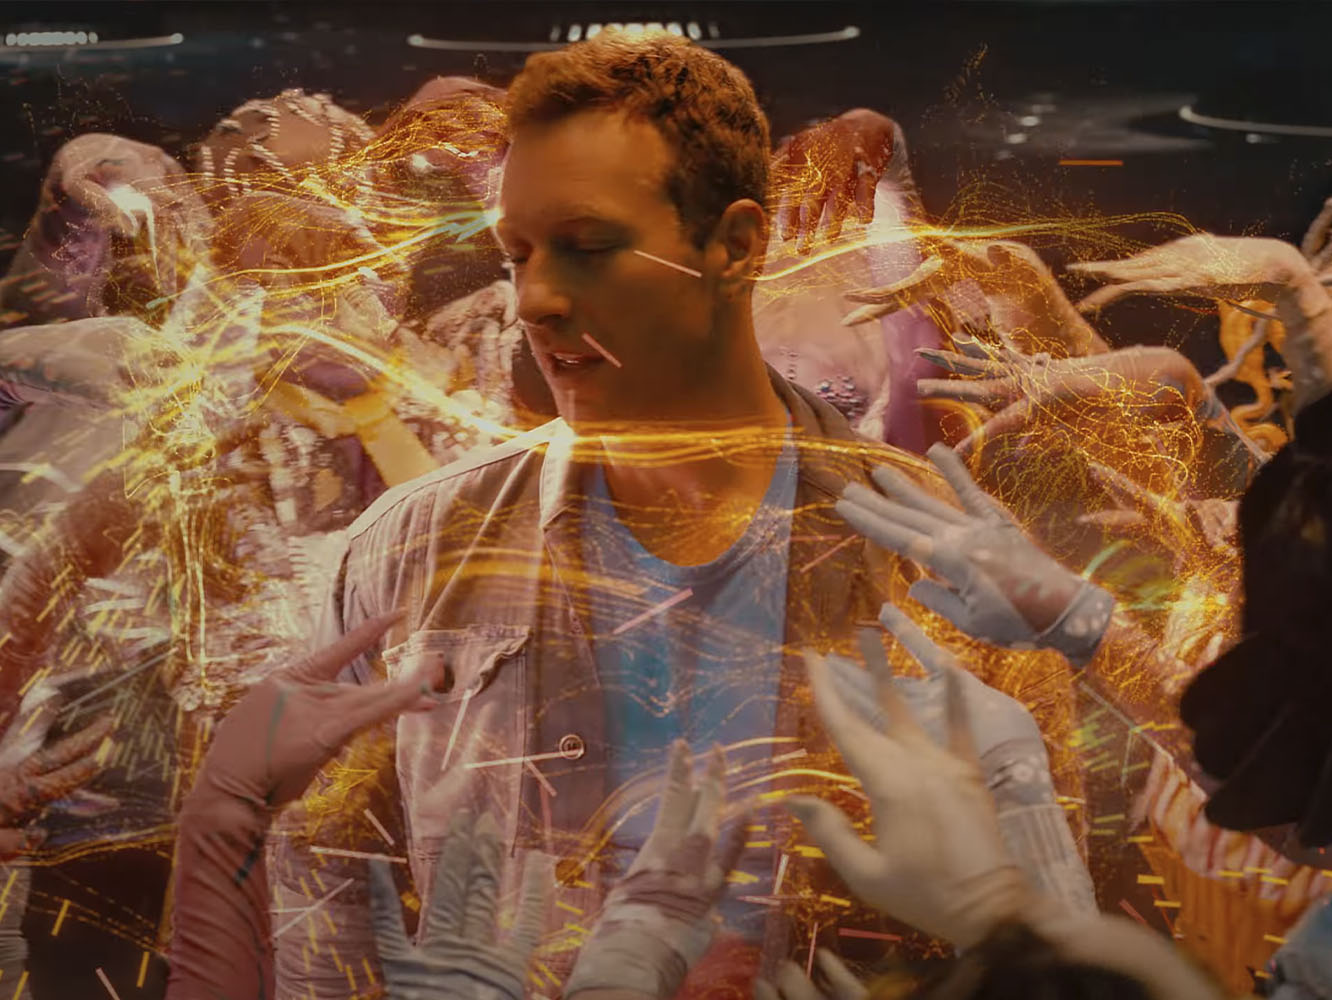  El ‘Chromatica’ de Coldplay está hecho unos zorros en el vídeo de ‘Higher Power’